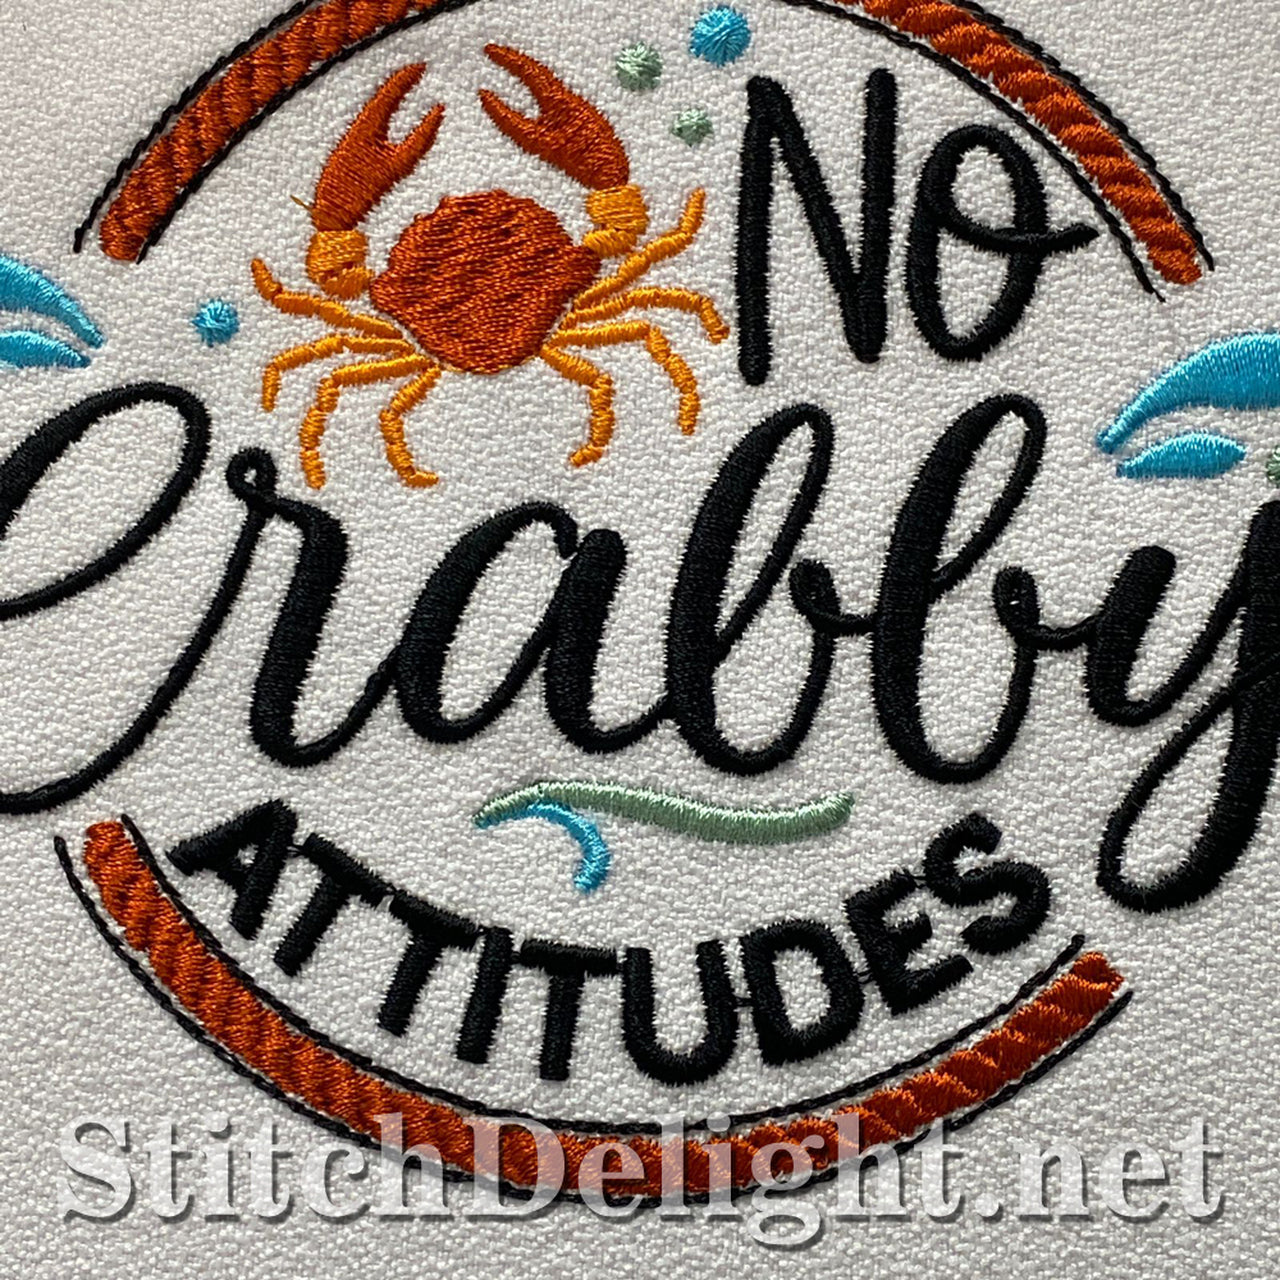 SDS1788 No Crabby Attitudes